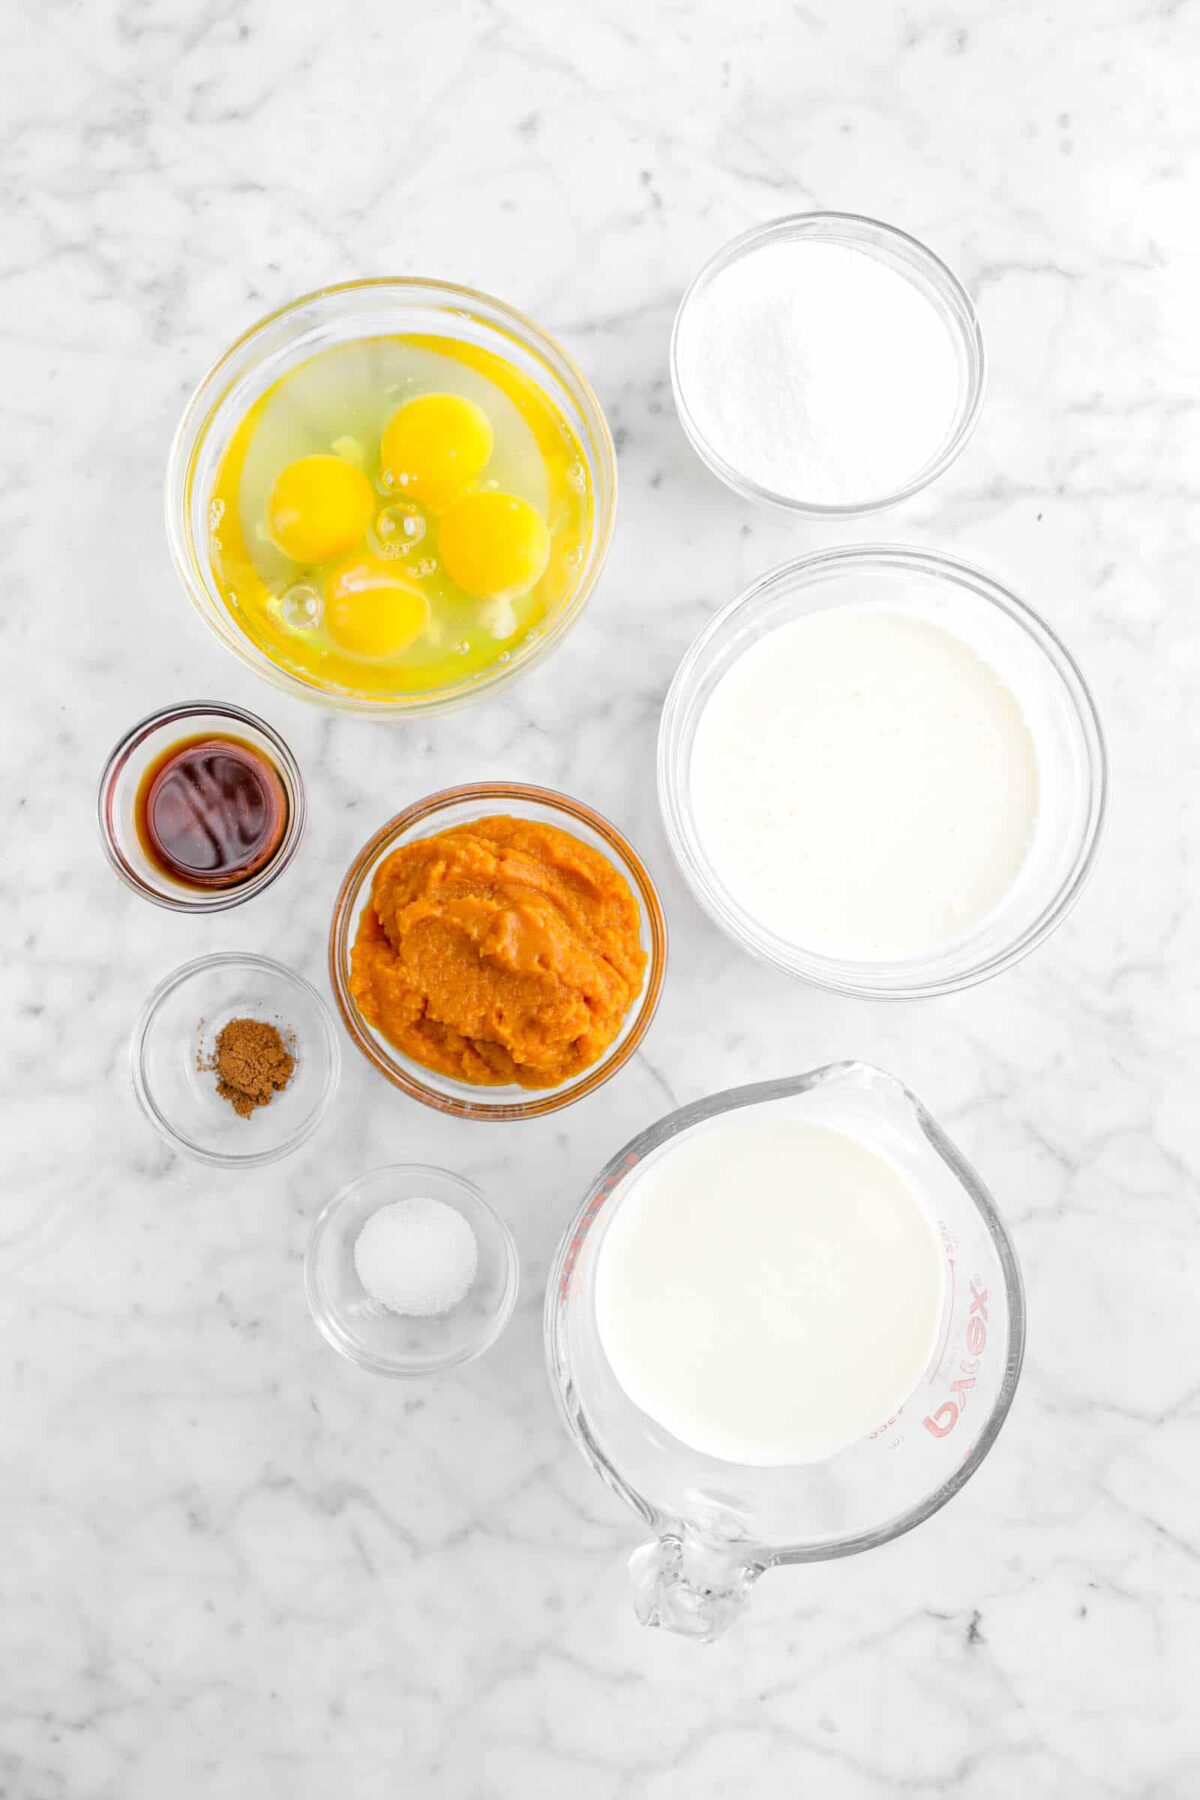 eggs, sugar, milk, heavy cream, pumpkin, vanilla, pumpkin pie spice, and salt on marble counter